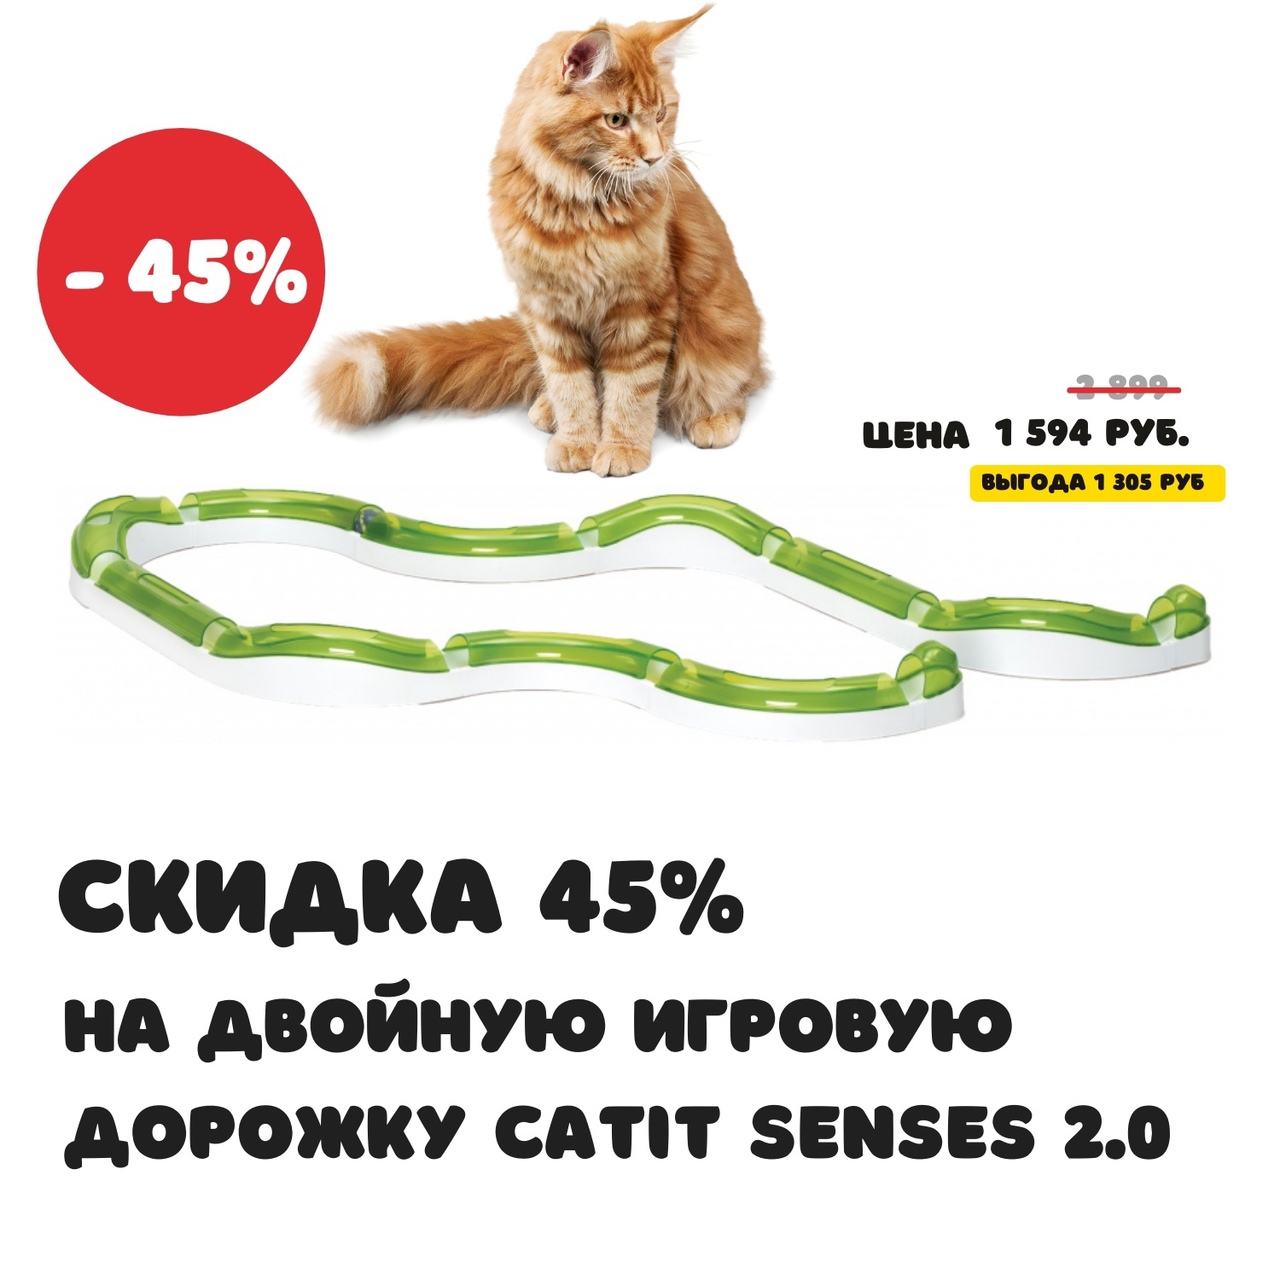 Двойная игровая дорожка Catit Senses 2.0 по выгодной цене, всего за 1594 рубля со скидкой 45%